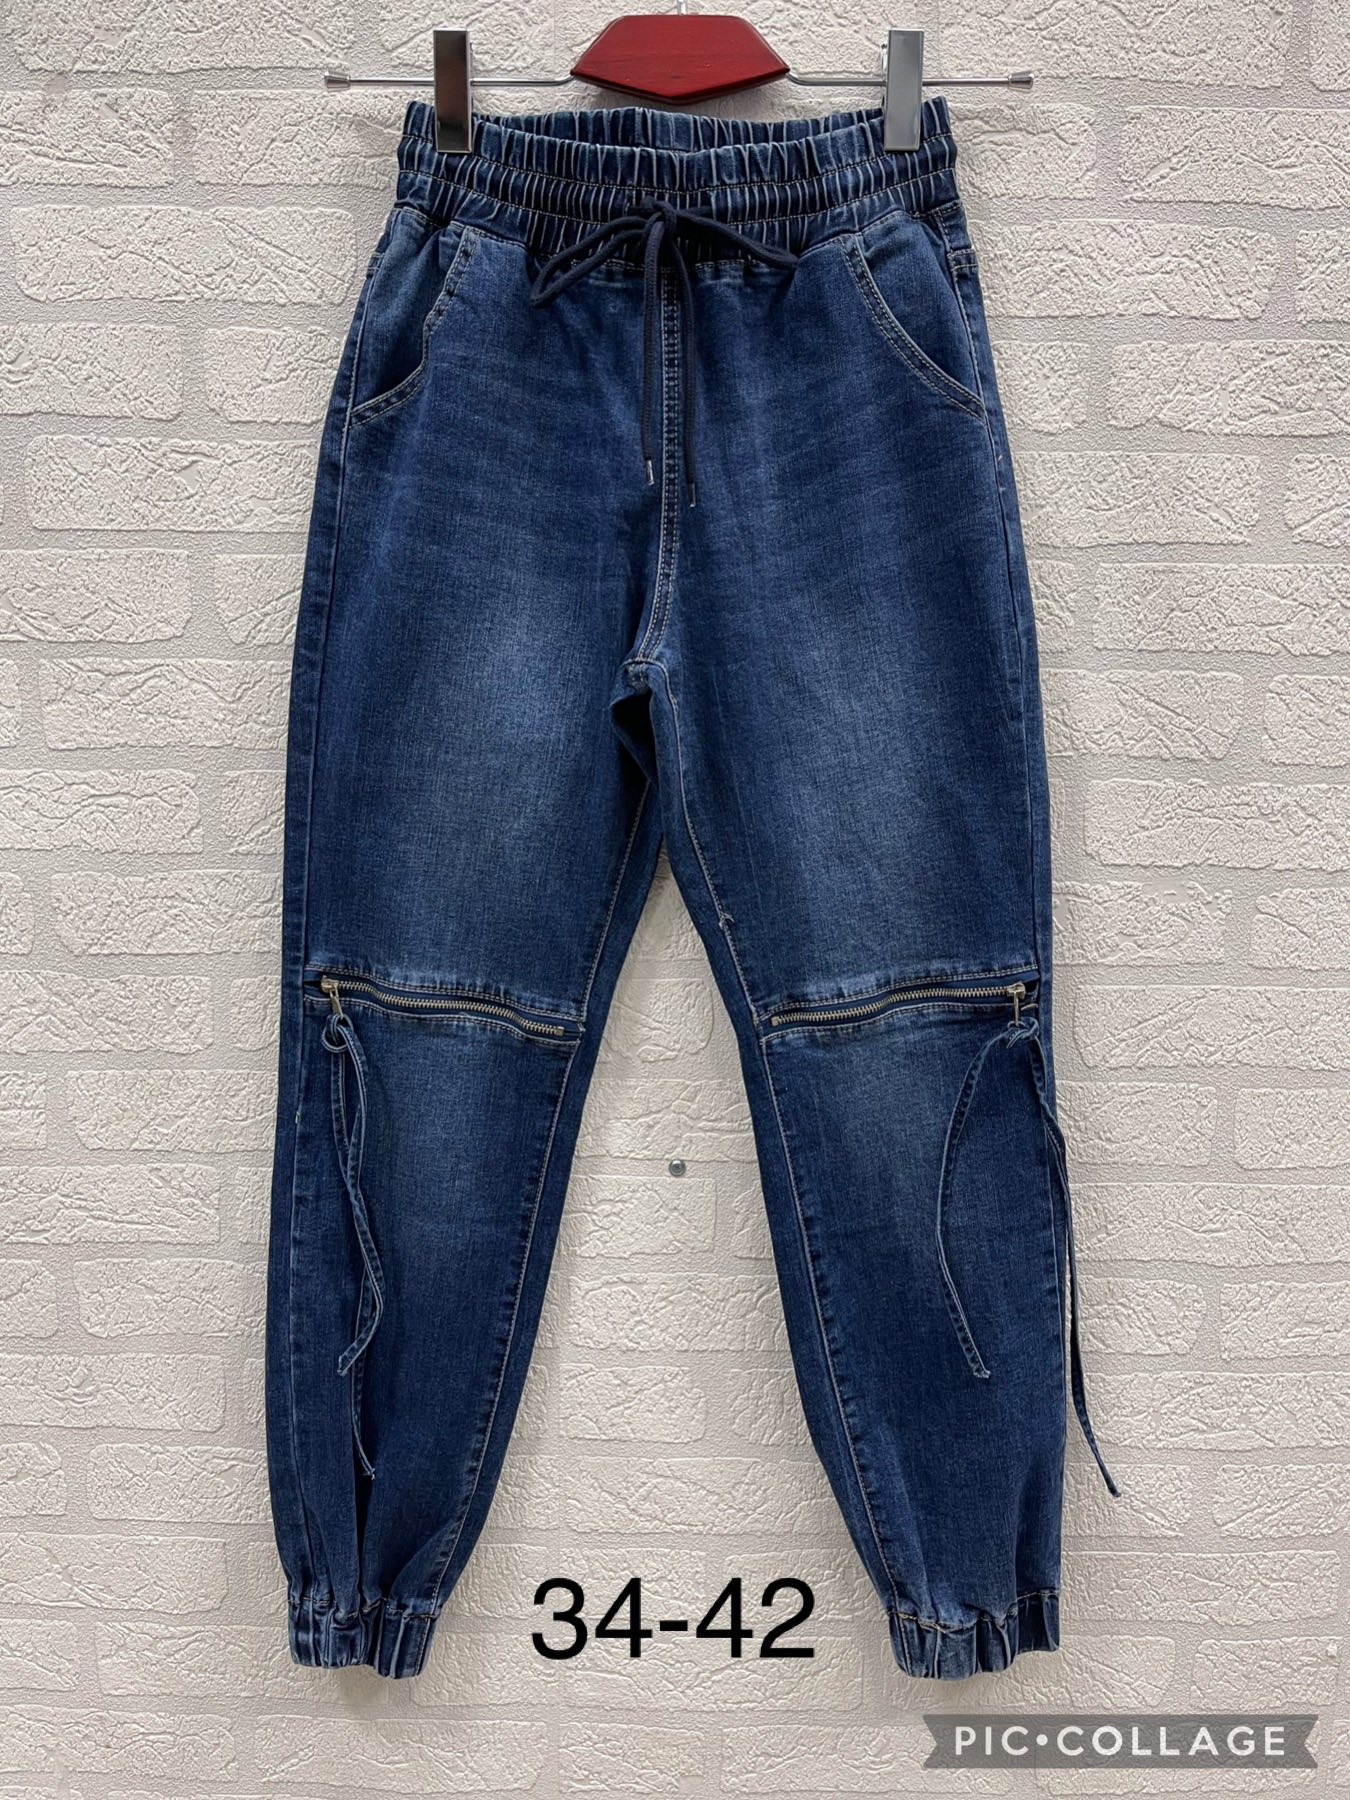 Spodnie damskie jeans Roz 34-42. 1 kolor.  Paczka 10szt